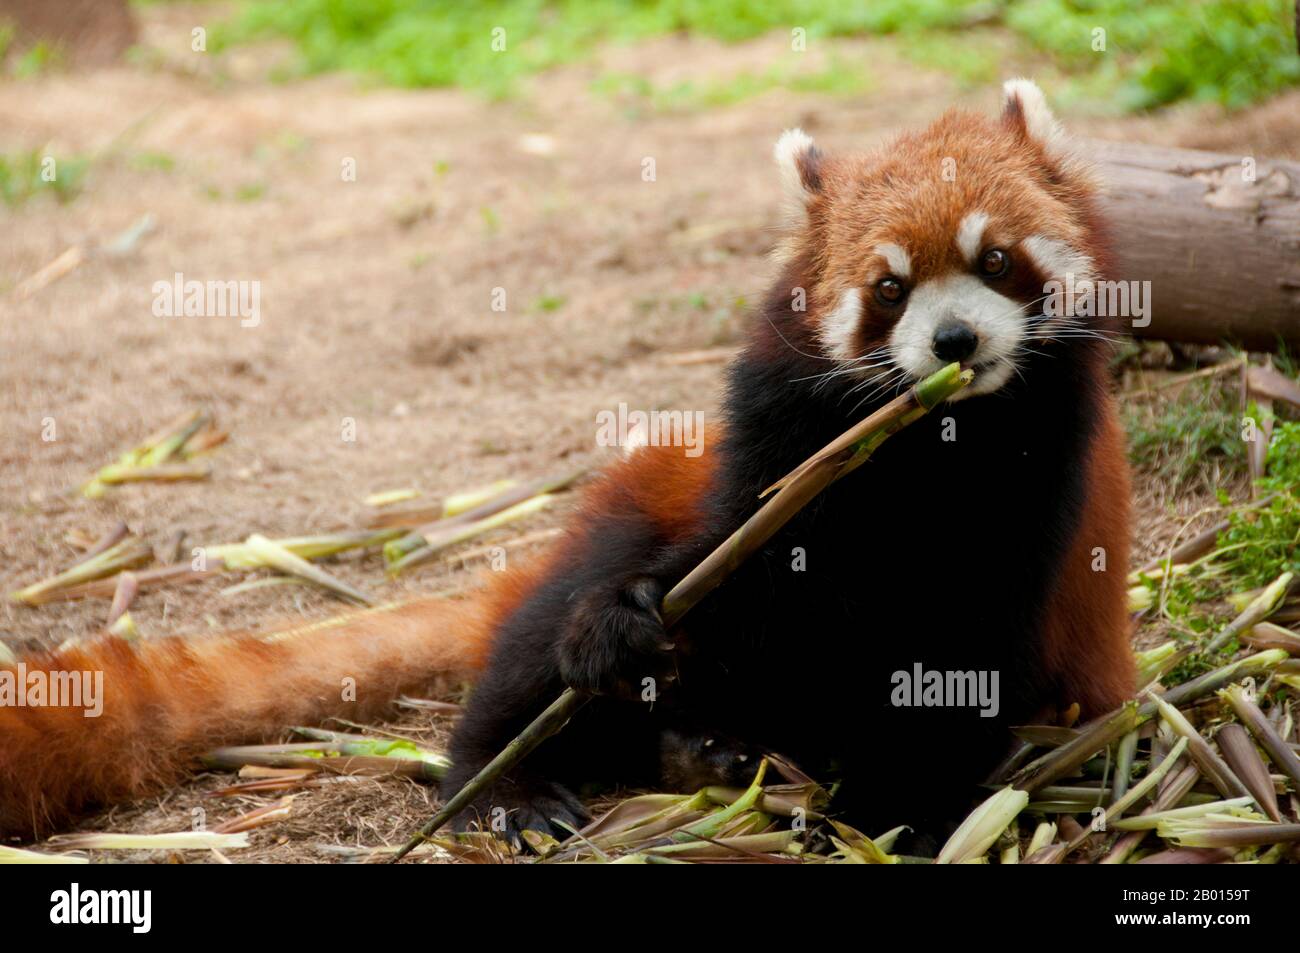 Chine : Panda rouge ou petit Panda, base de recherche sur la reproduction de Panda géante, Chengdu, province du Sichuan. Le panda rouge (Ailurus fulgens, ou chat brillant), est un petit mammifère arboricole originaire de l'est de l'Himalaya et du sud-ouest de la Chine. C'est la seule espèce du genre Ailurus. Légèrement plus grand qu'un chat domestique, il a une fourrure brun rougeâtre, une longue queue déchiquete, et une marche de waddling en raison de ses jambes avant plus courtes. Il se nourrit principalement de bambou, mais il est omnivore et peut aussi manger des œufs, des oiseaux, des insectes et des petits mammifères. C'est un animal solitaire, principalement actif du crépuscule à l'aube. Banque D'Images